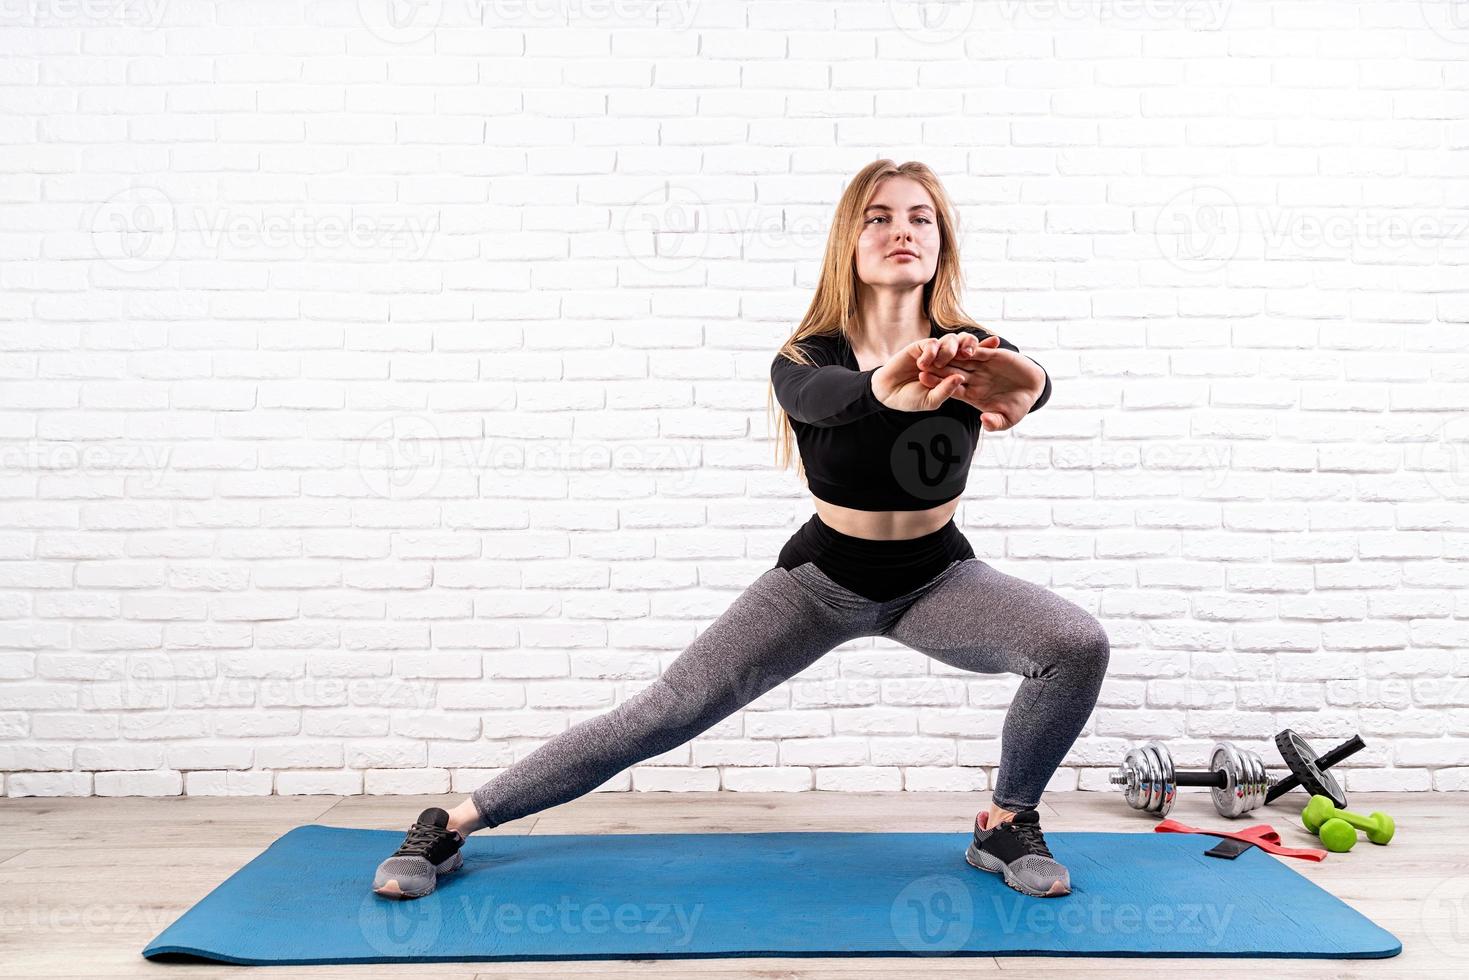 jonge fitte vrouw doet zijwaartse lunges binnenshuis op een fitnessmat foto